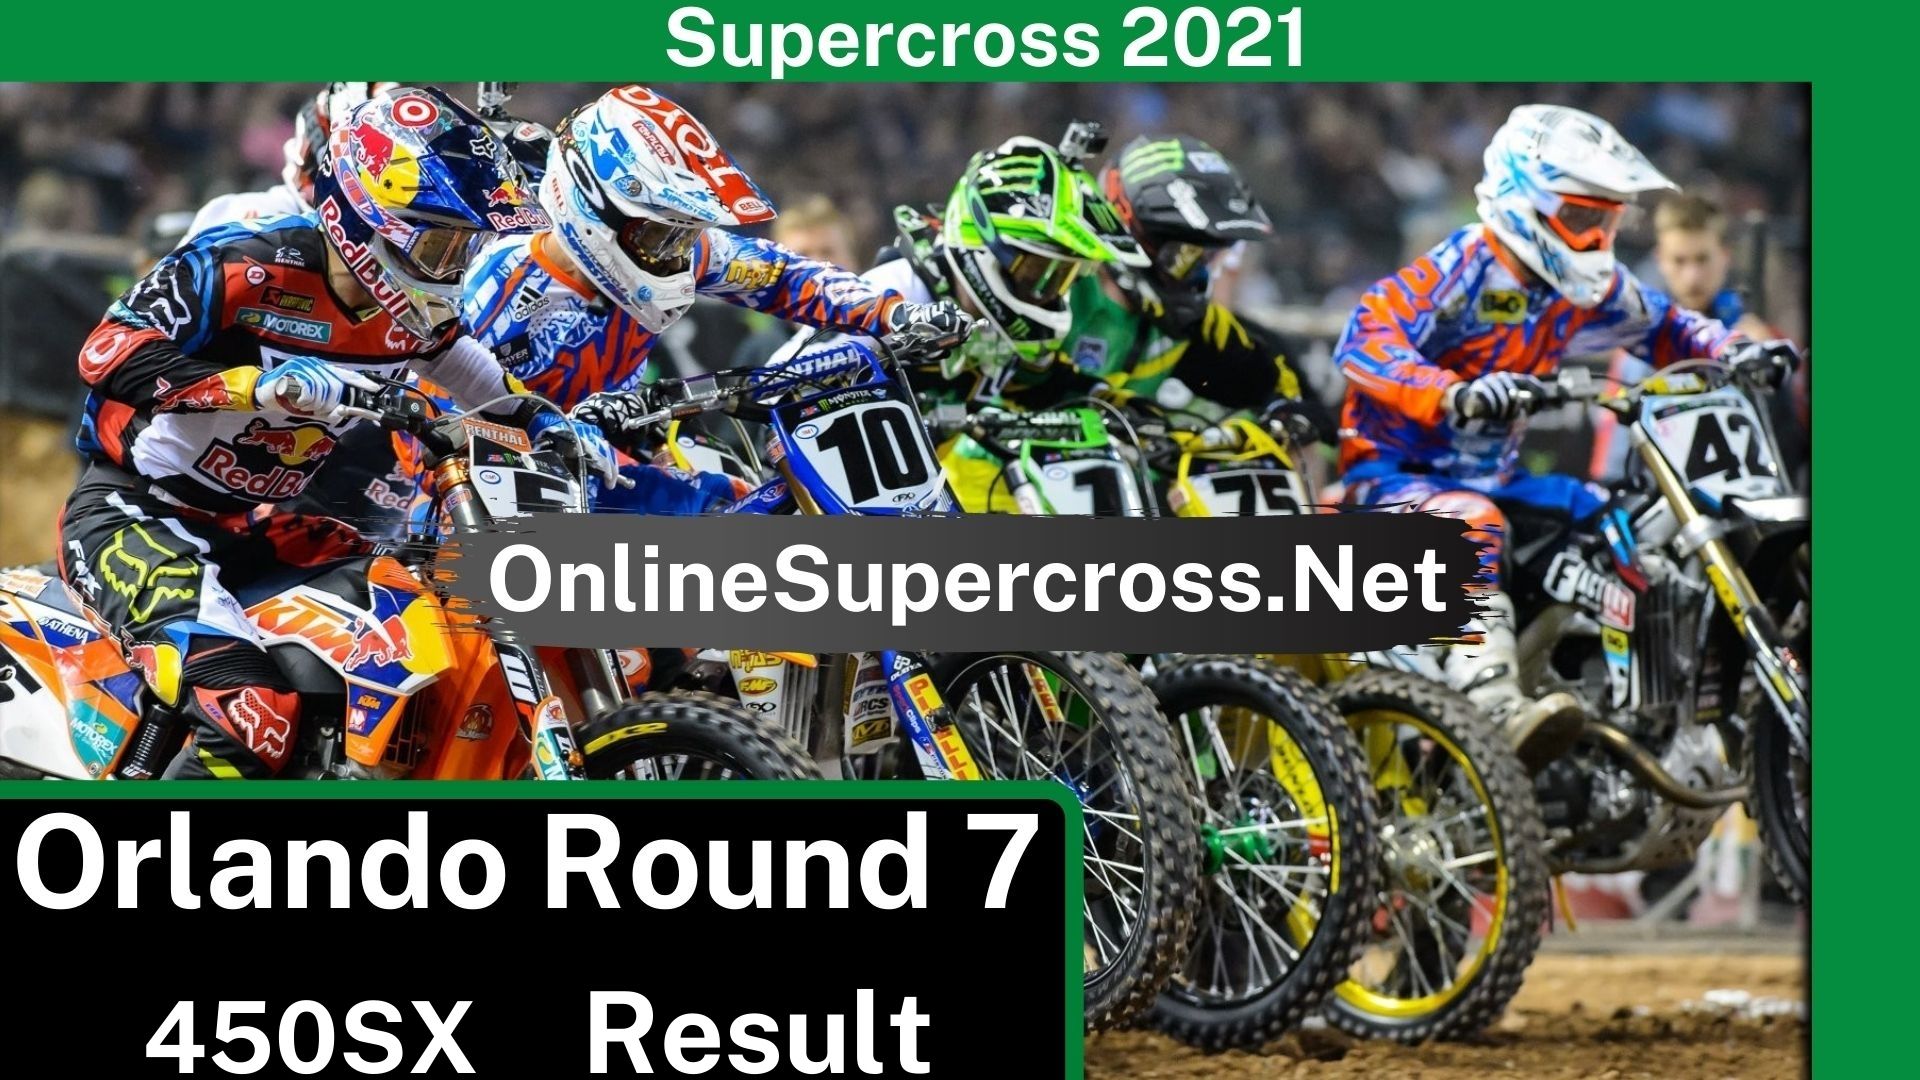 Orlando Round 7 Supercross 450SX Result 2021